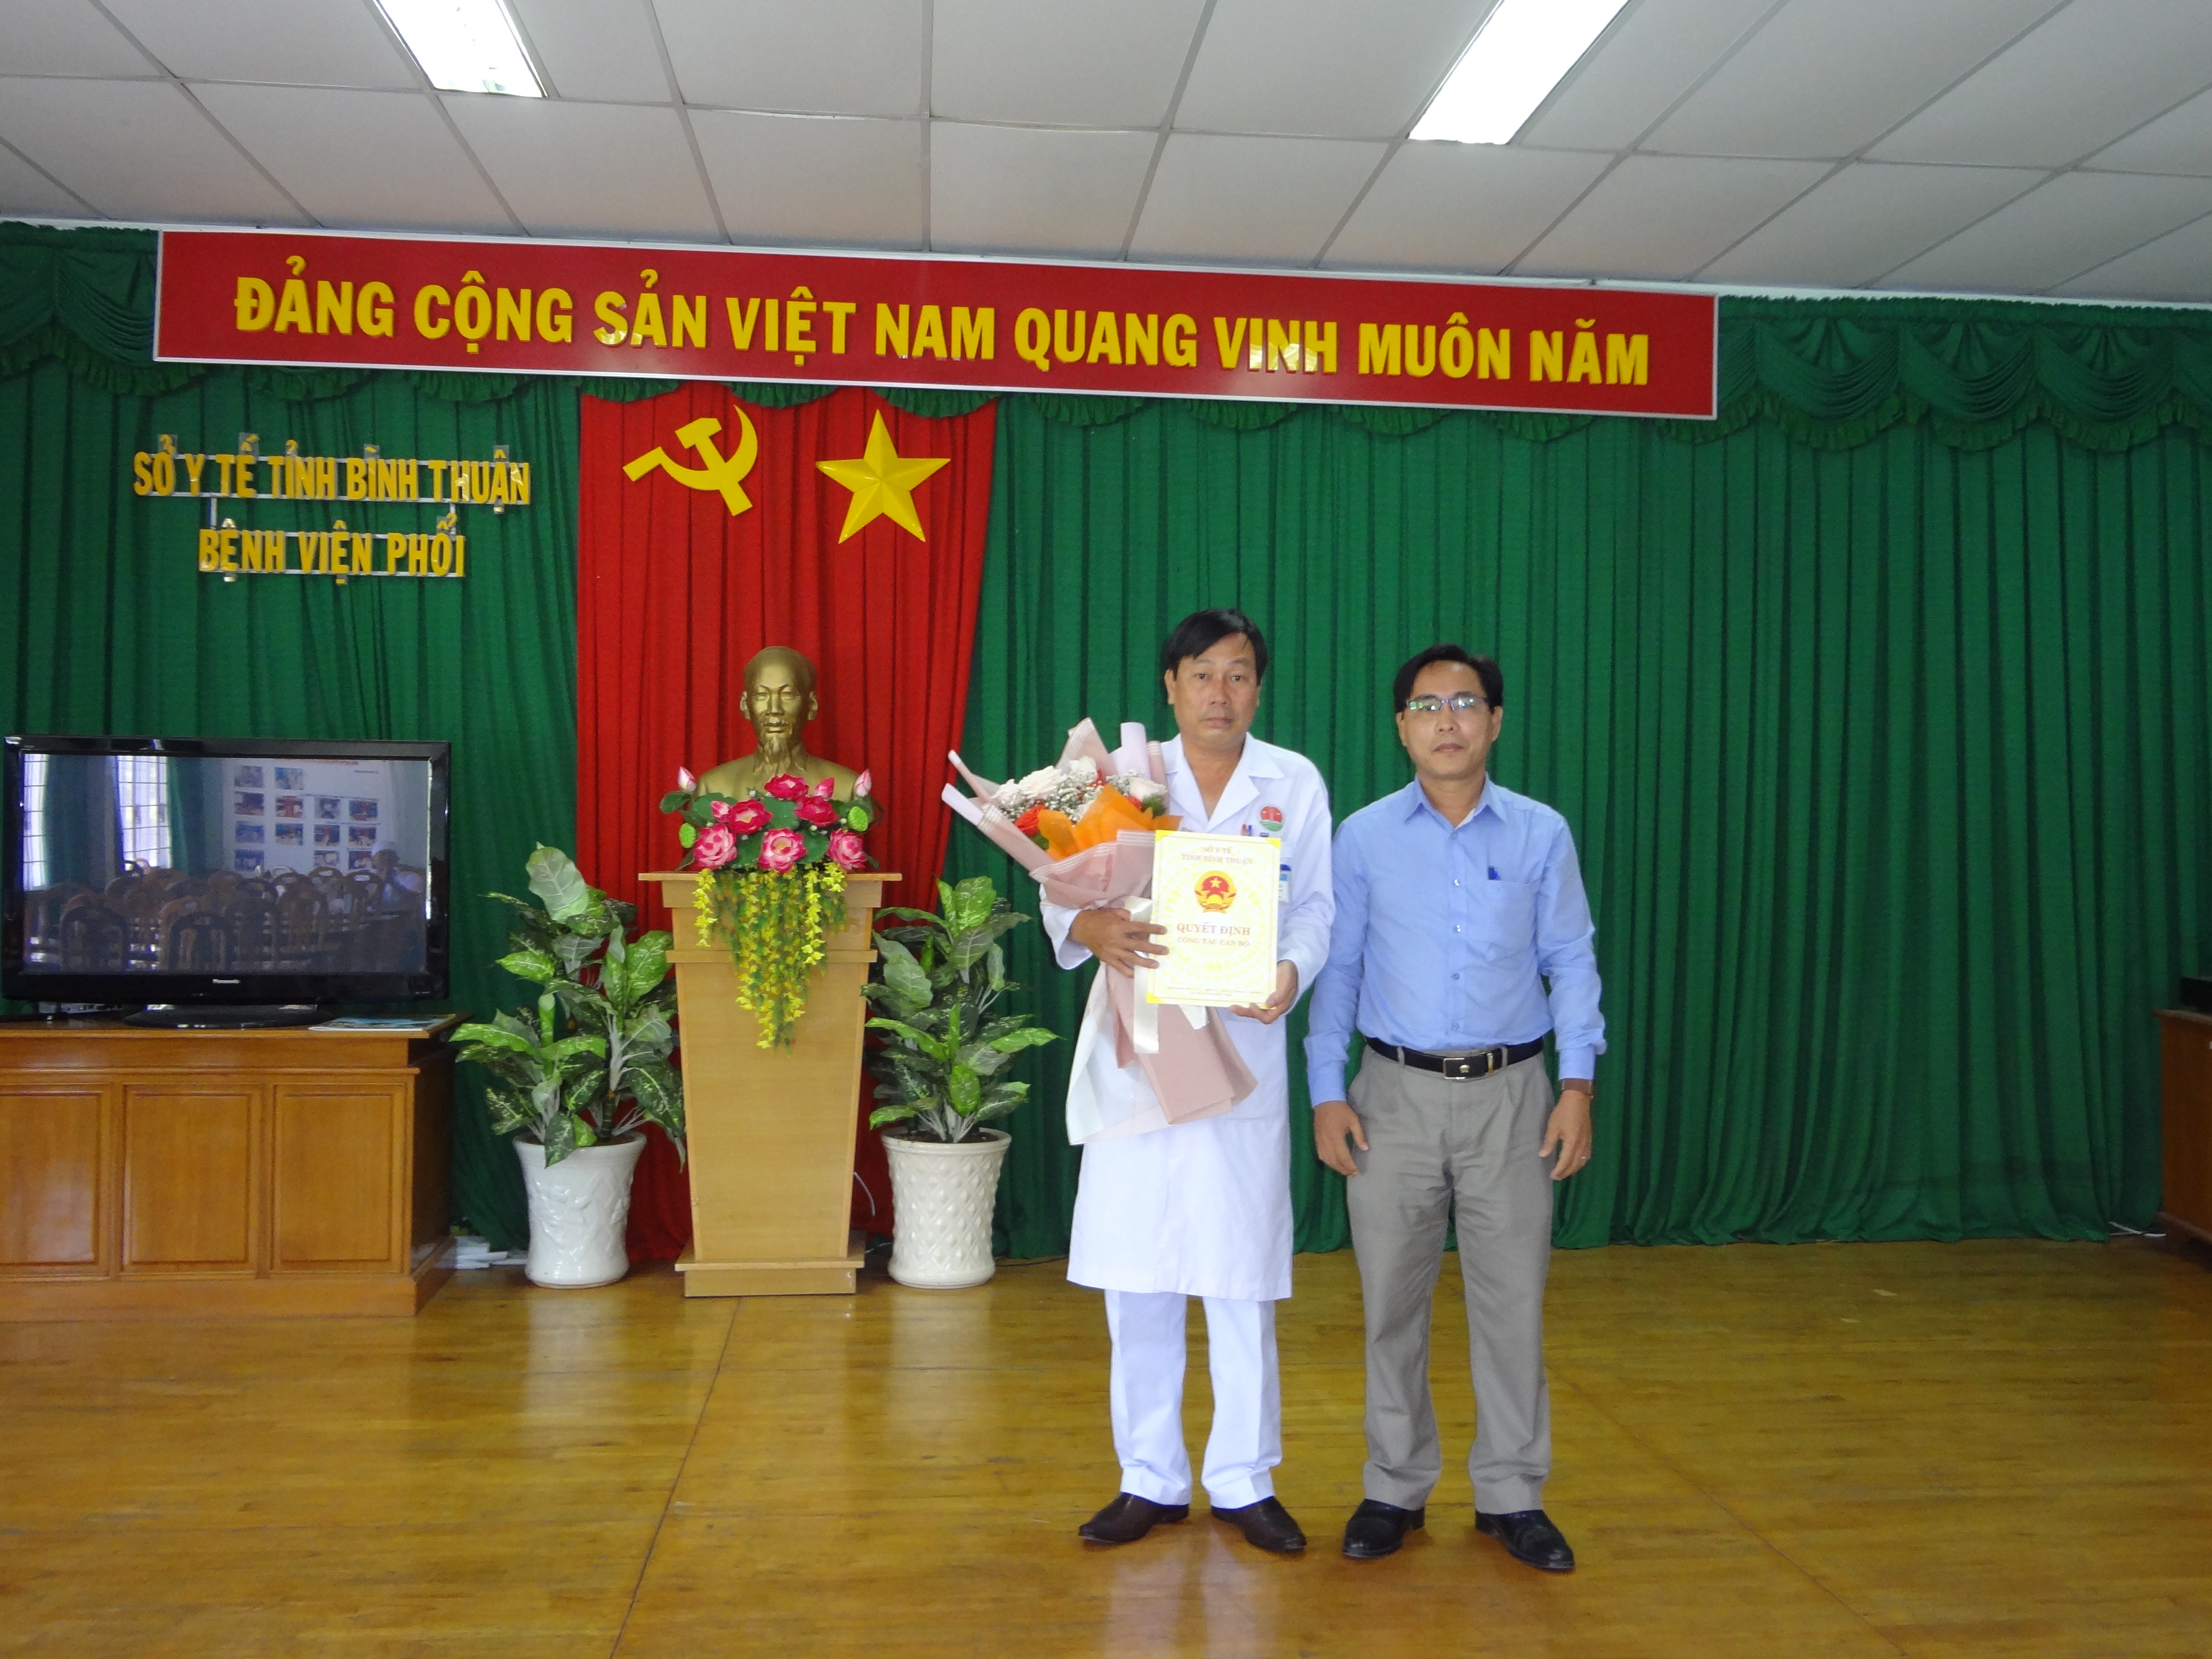 Giới thiệu chức vụ và chữ ký của Phó Giám đốc Bệnh viện Phổi tỉnh Bình Thuận